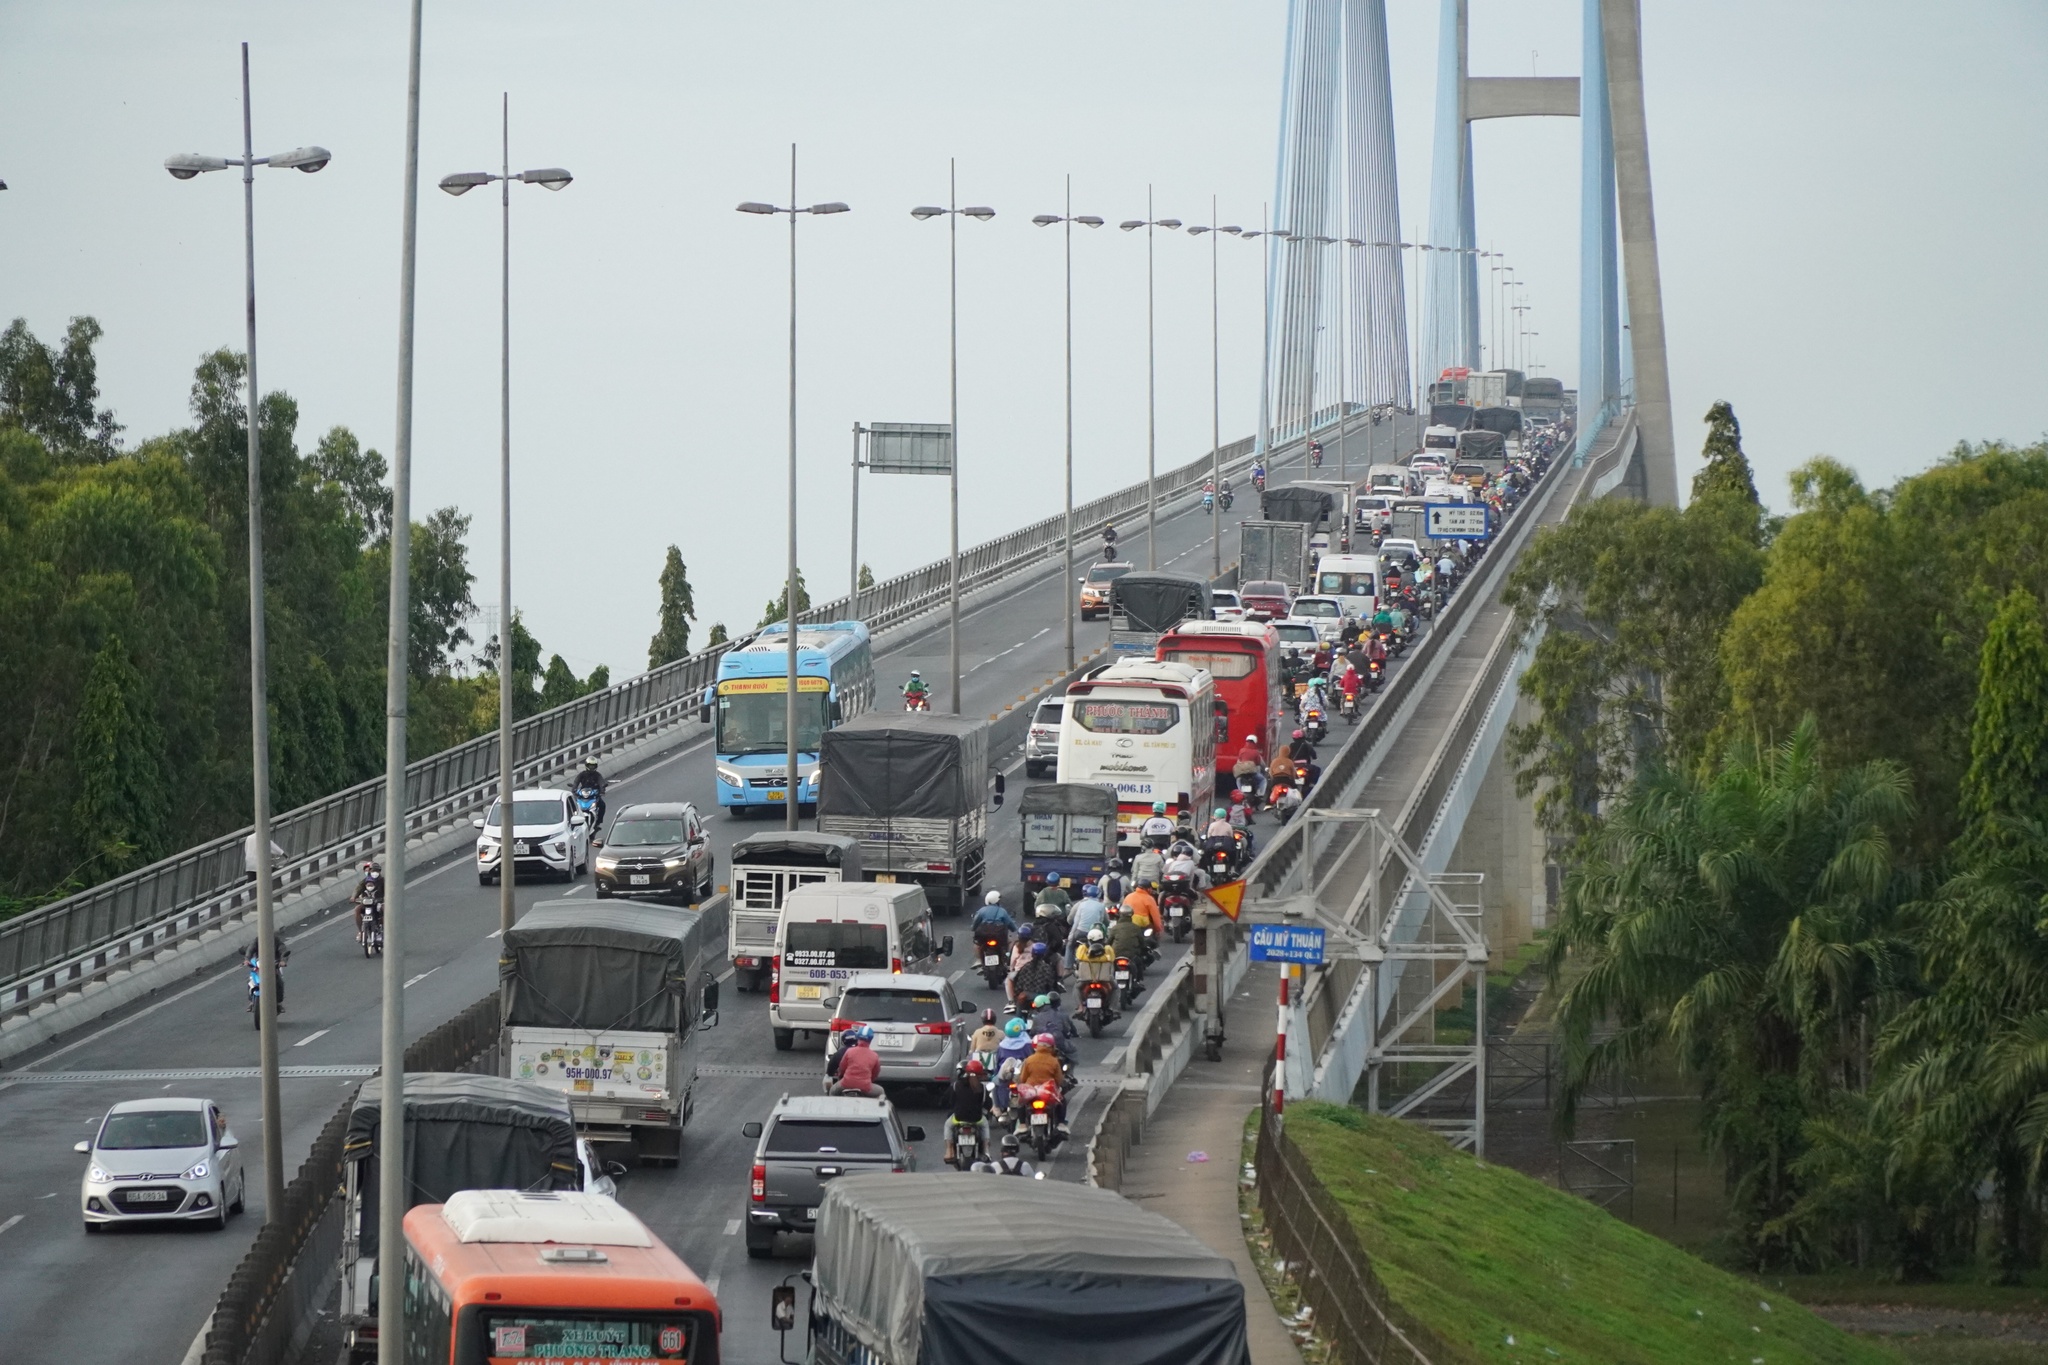 Cầu Mỹ Thuận tiếp tục ùn tắc nặng nề trong chiều mùng 8 tết - ảnh 2